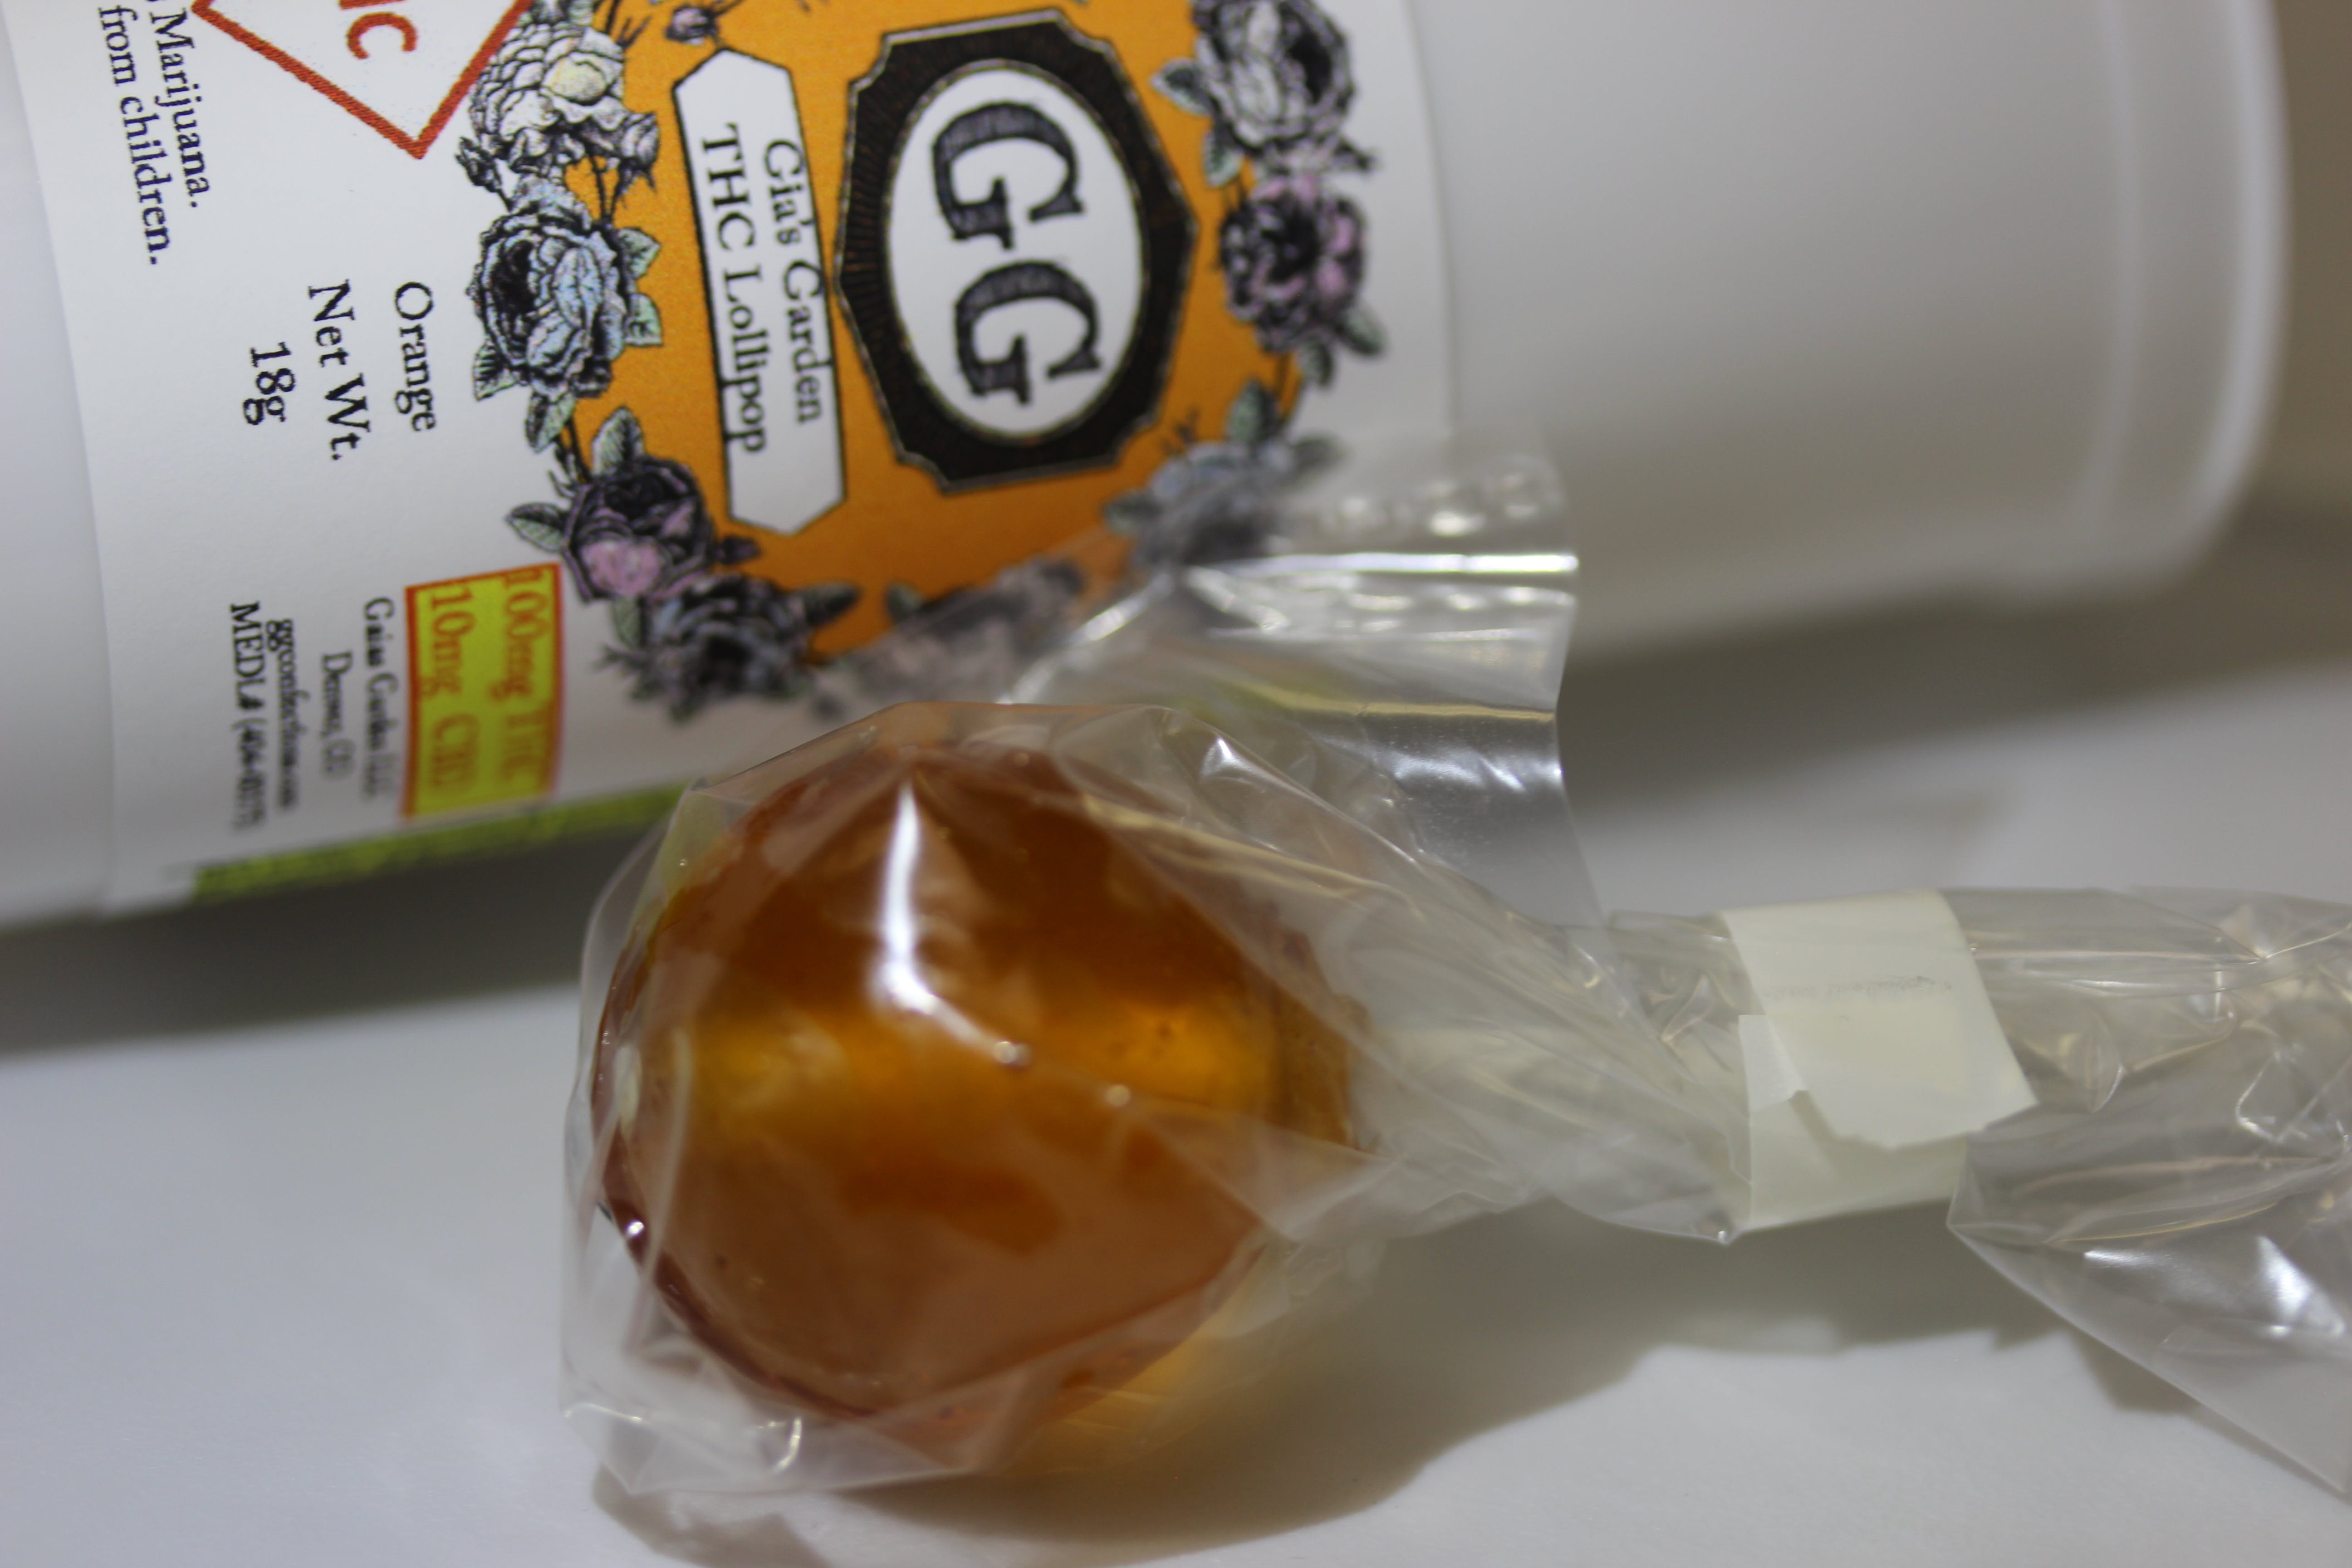 edible-gaias-garden-lollipops-100mg